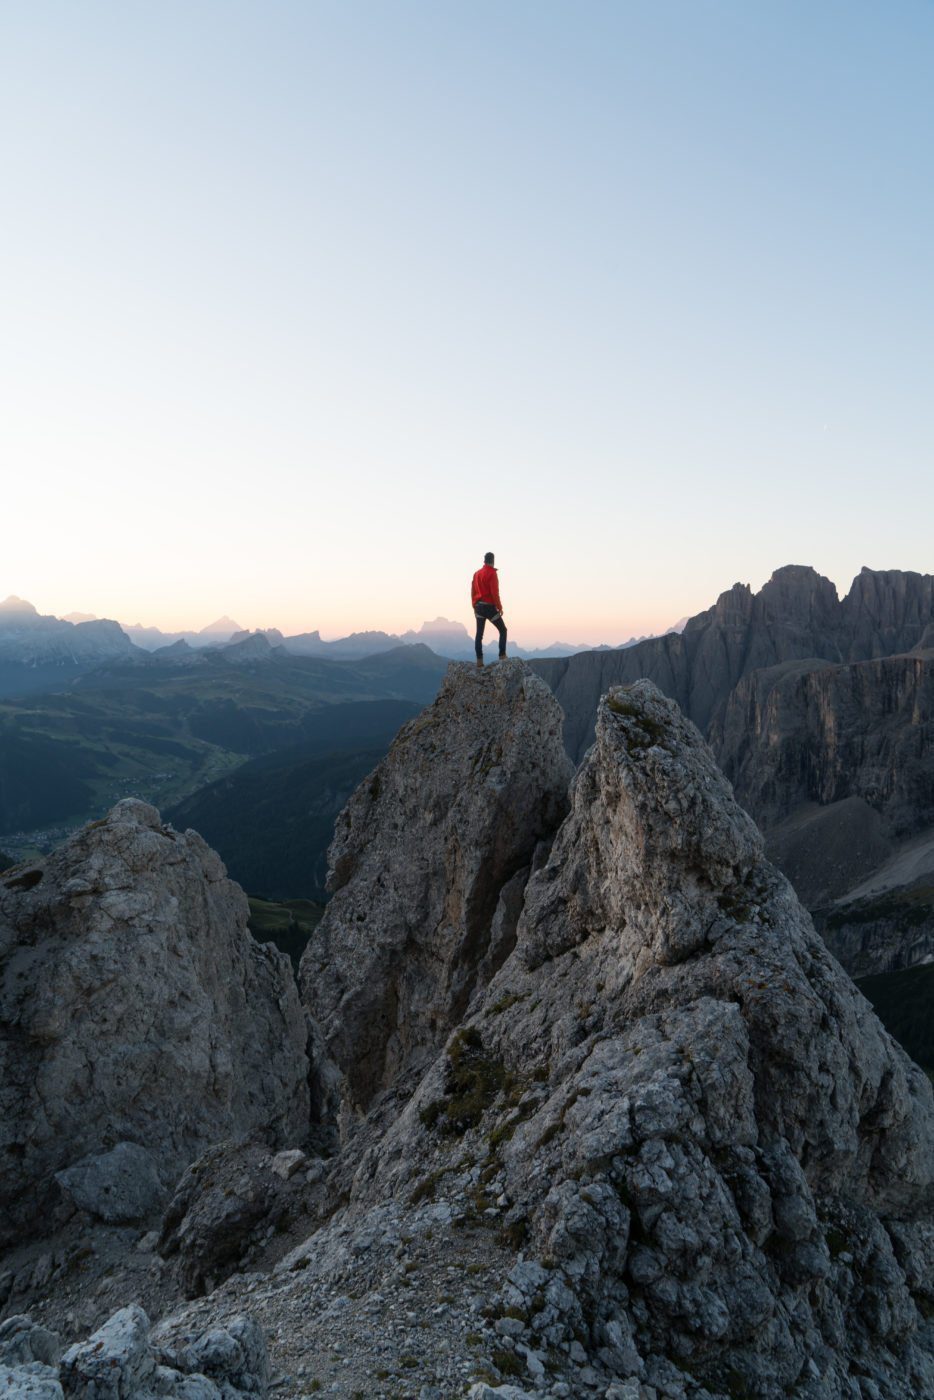 Cir Spitze, Pizes de Cir, famous Instagram spot in the Dolomites